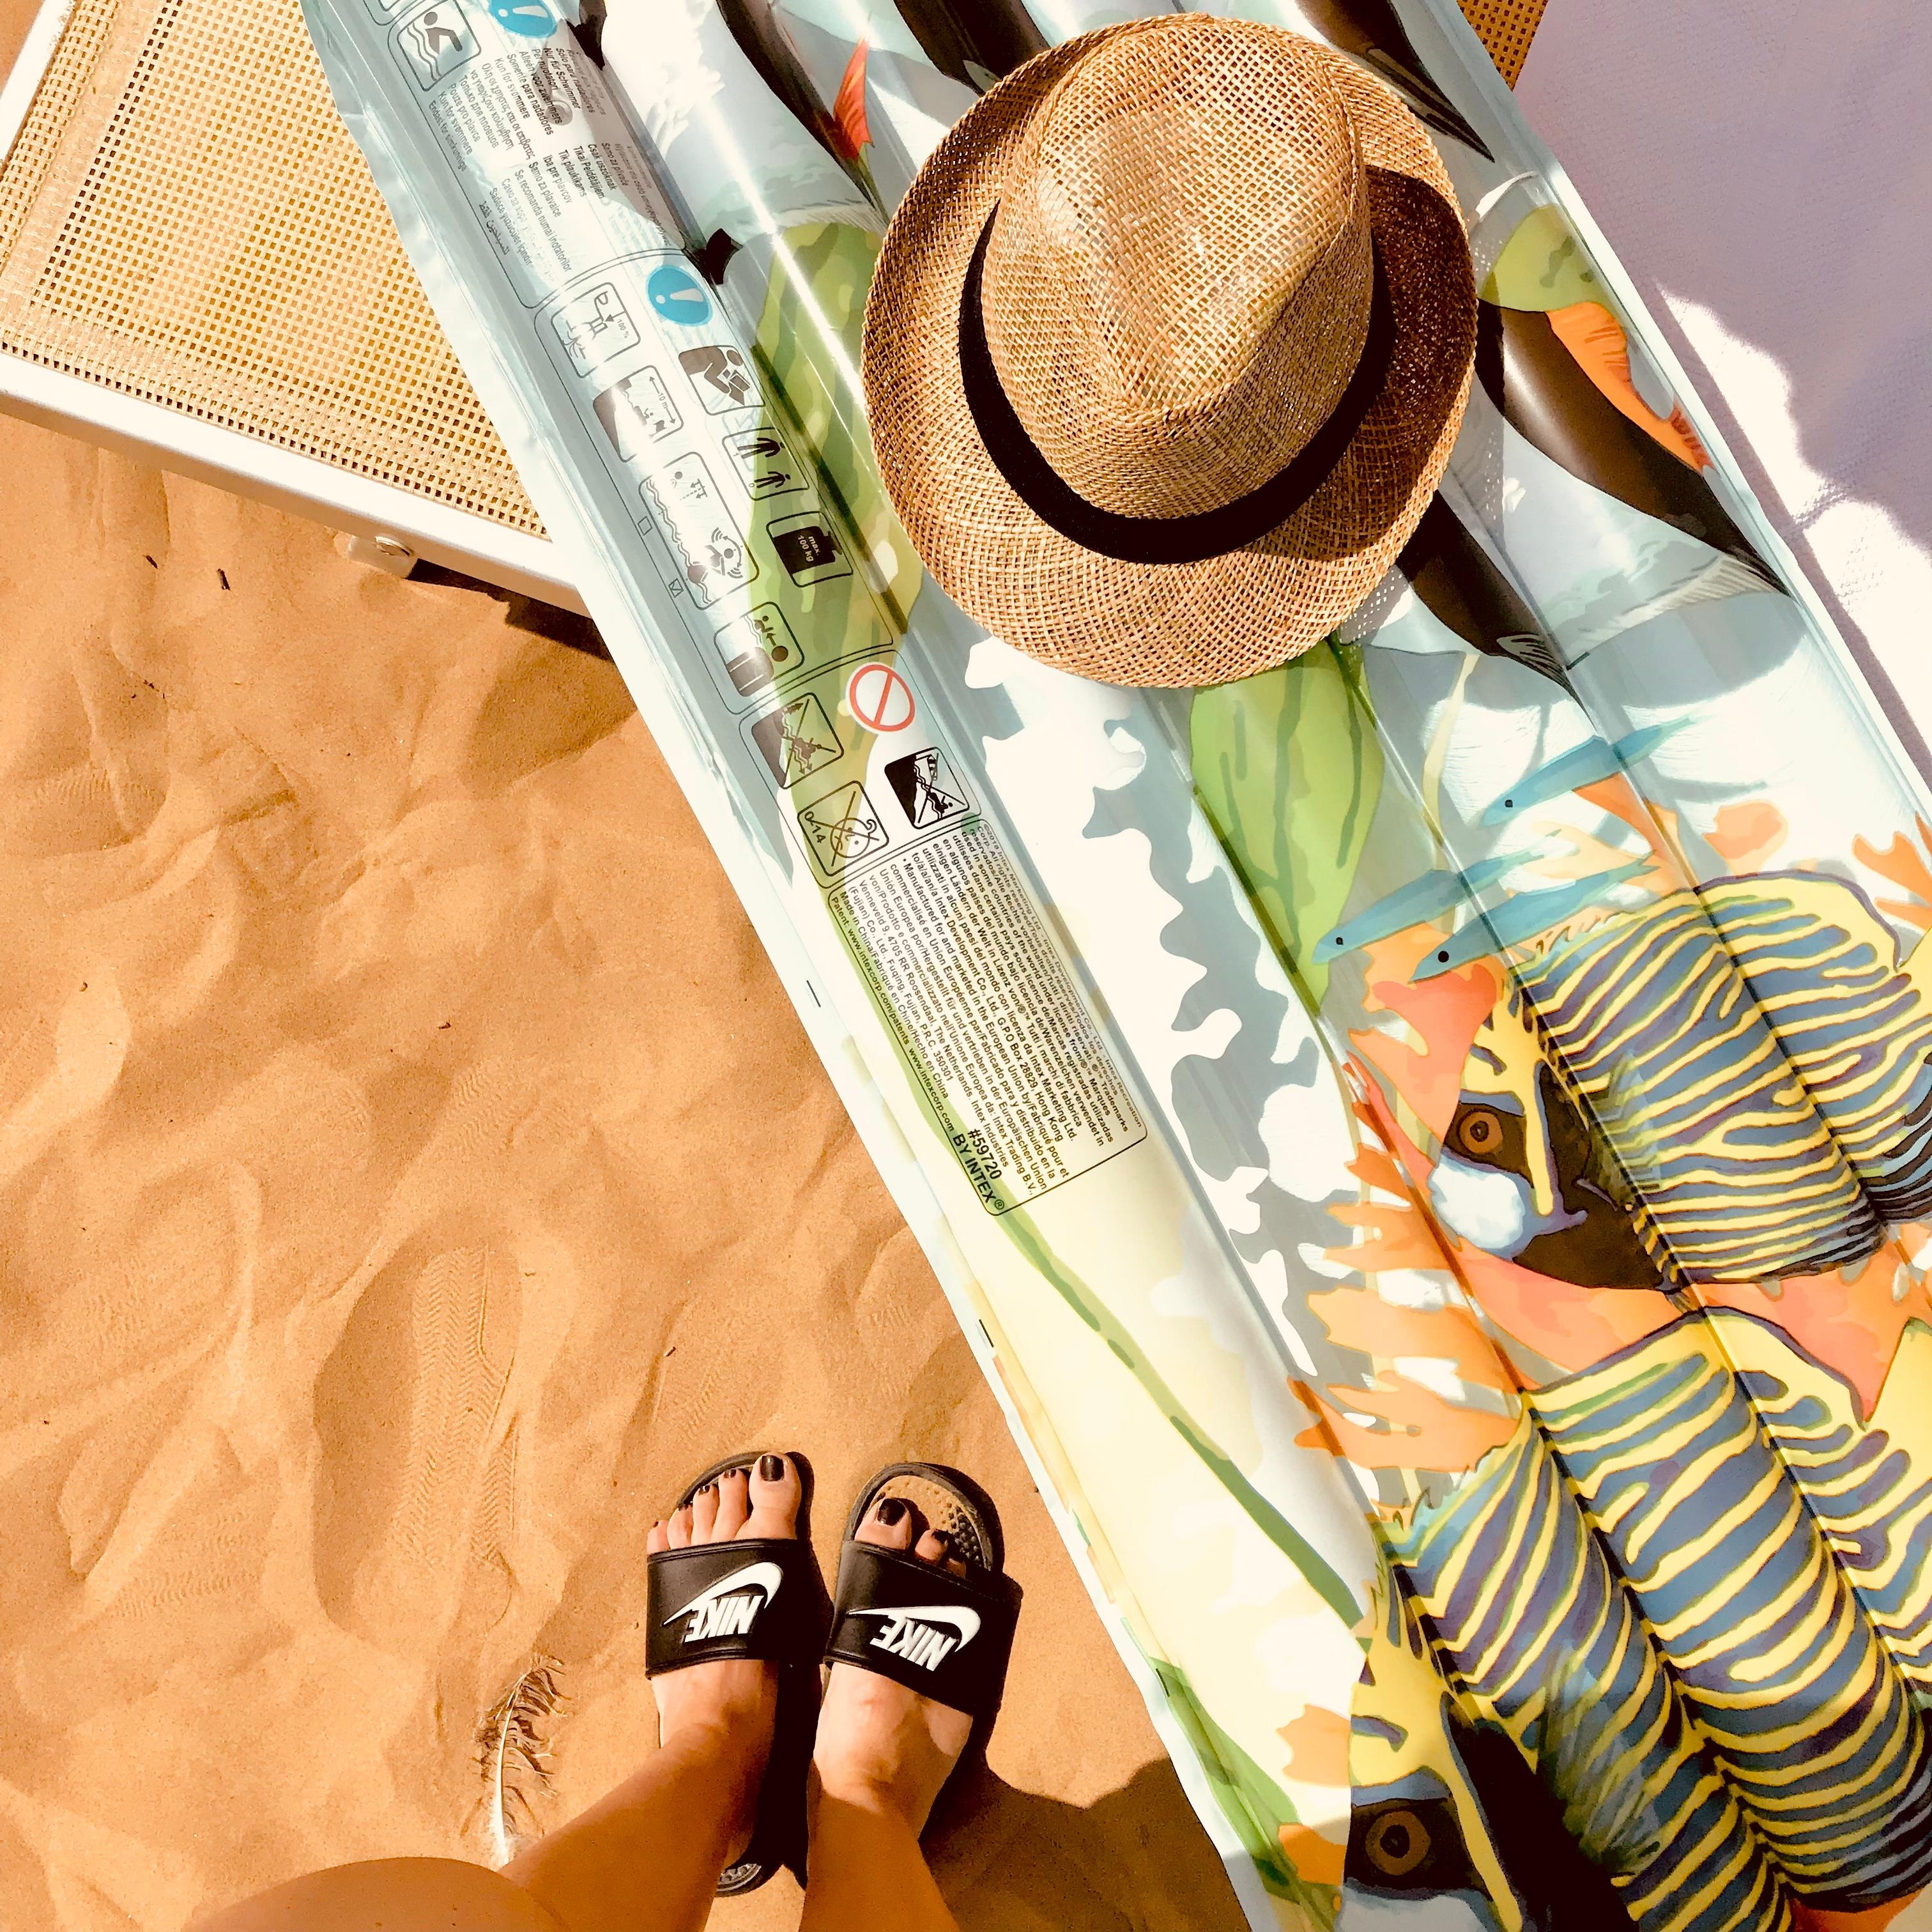 Sommer, Sonne, das Meer und den Strand 🏖 in  Italien 🇮🇹 genießen
#strand #sand #sandale #hut #urlaub2021 #sommer